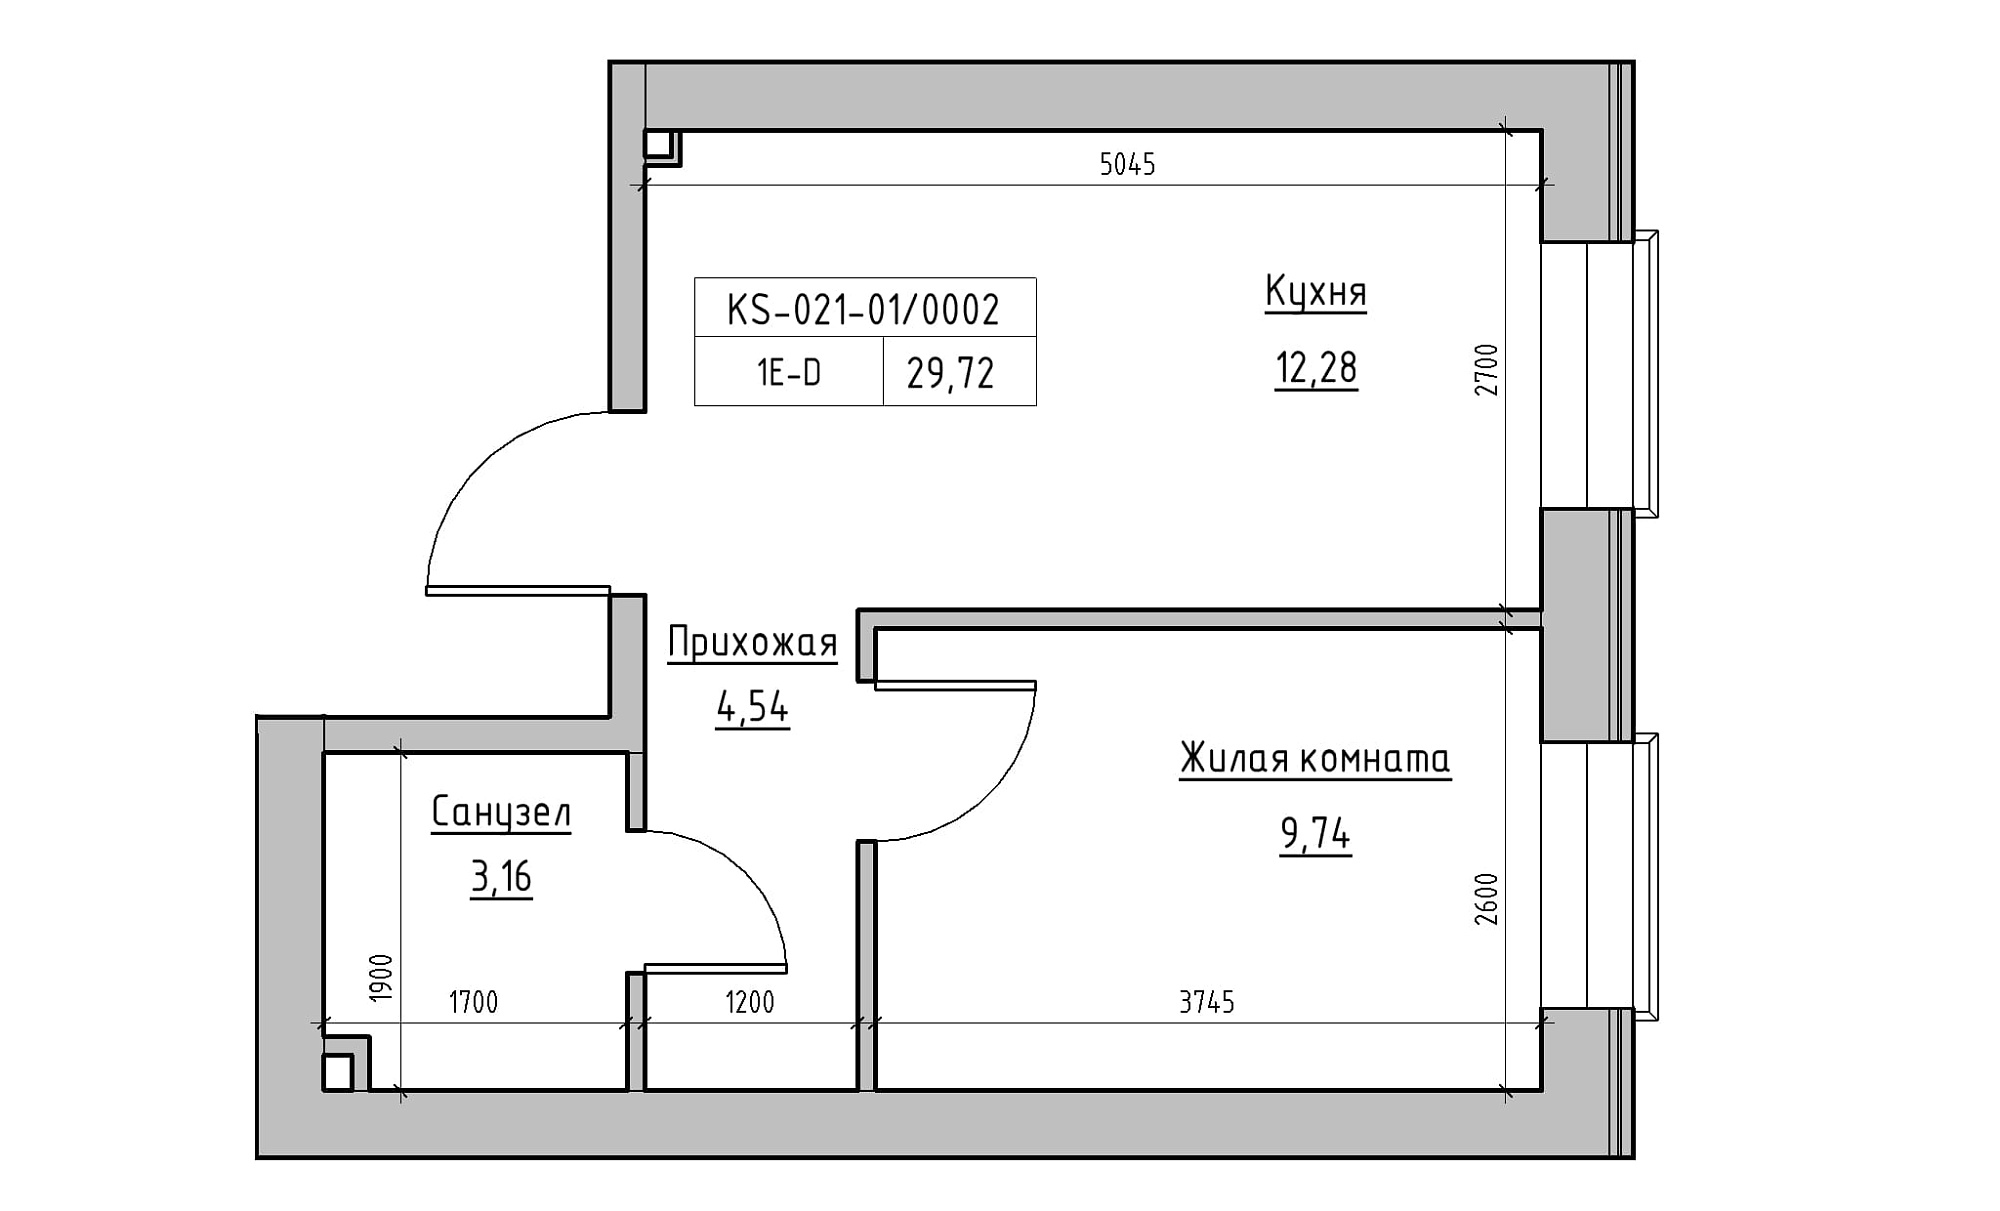 Планування 1-к квартира площею 29.72м2, KS-021-01/0002.